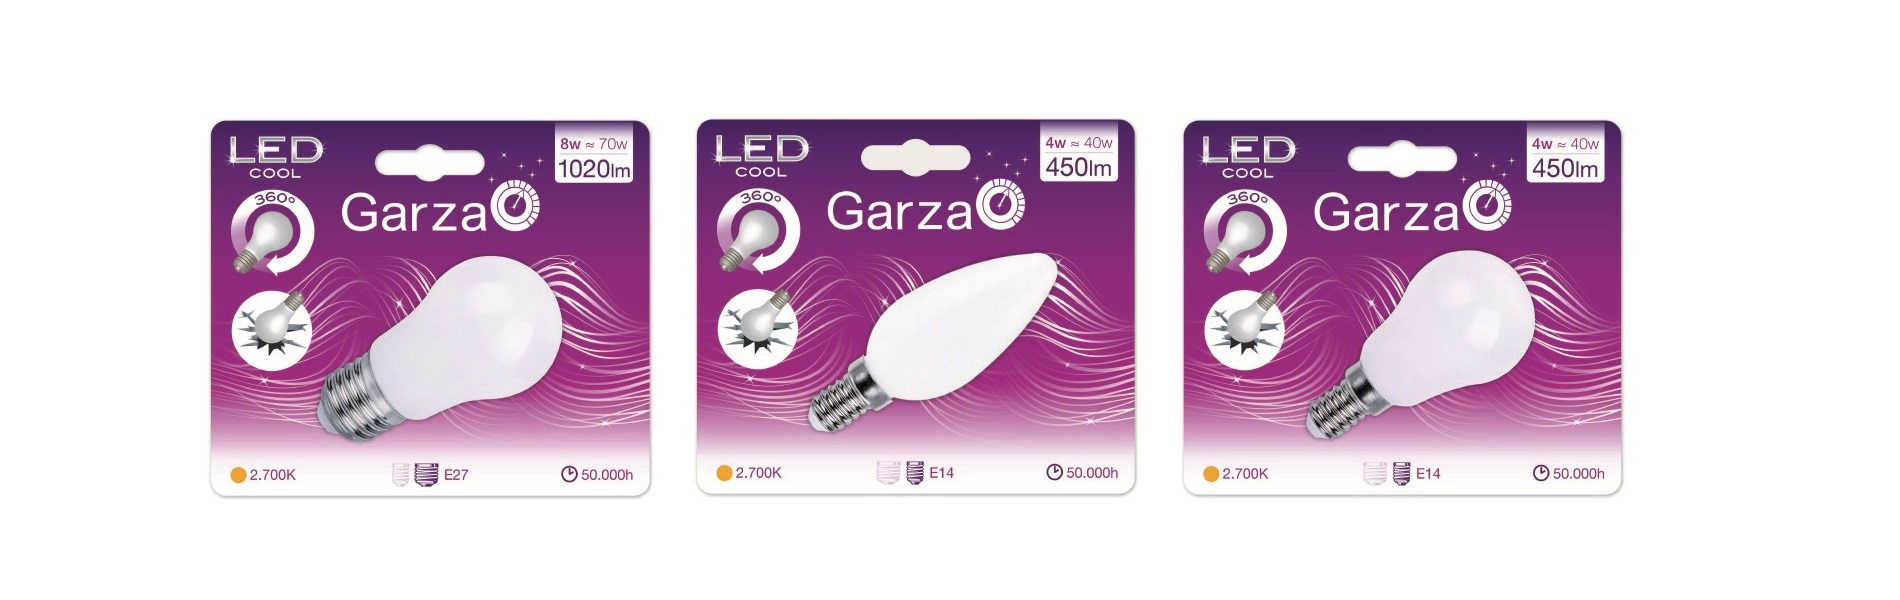 Productos de Garza LED en MAGHENS NETWORK S.L.